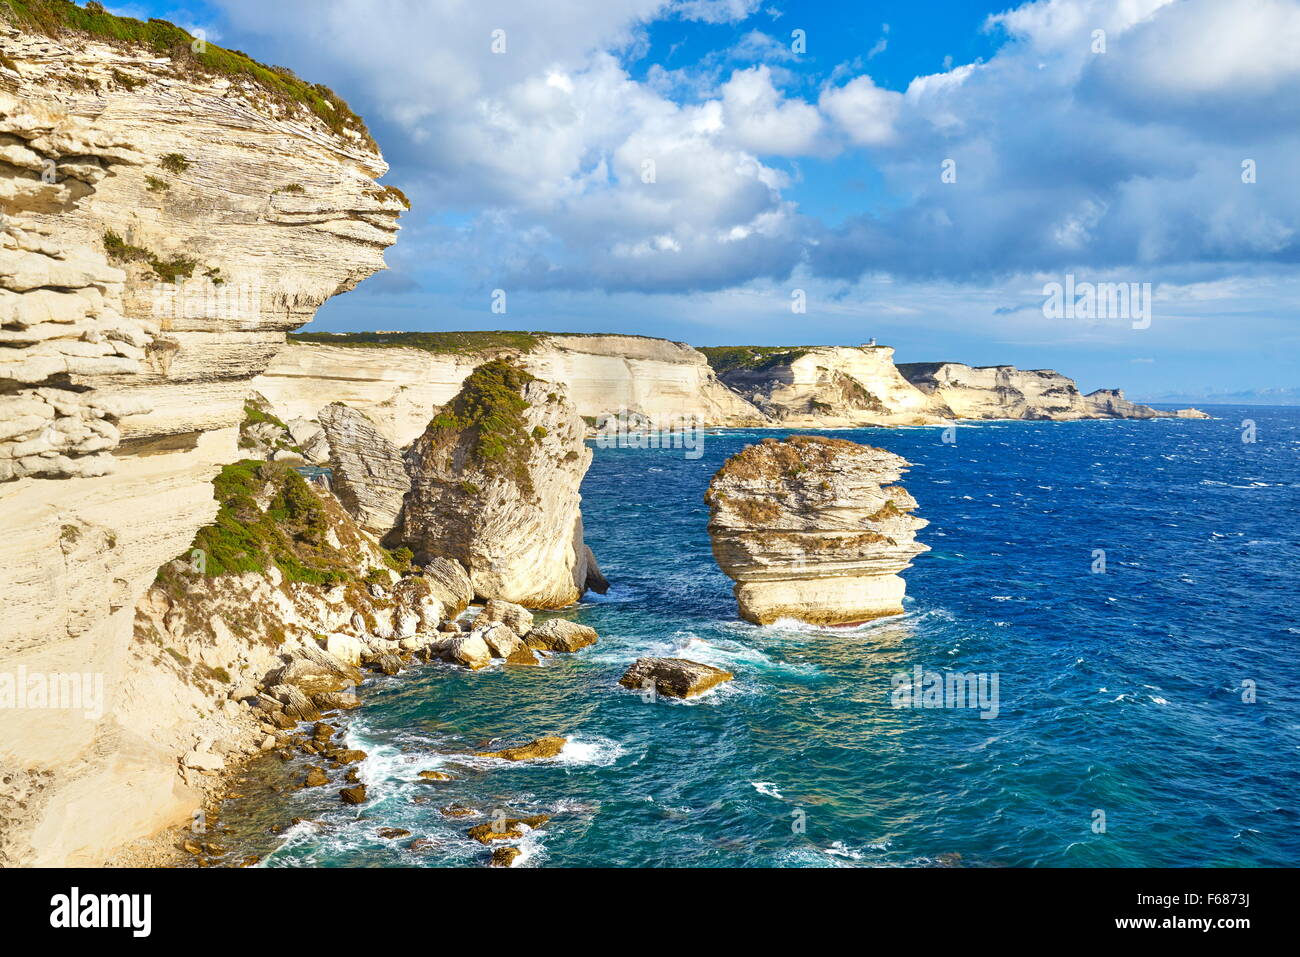 La falaise de calcaire, Bonifacio, côte sud de la Corse, France Banque D'Images